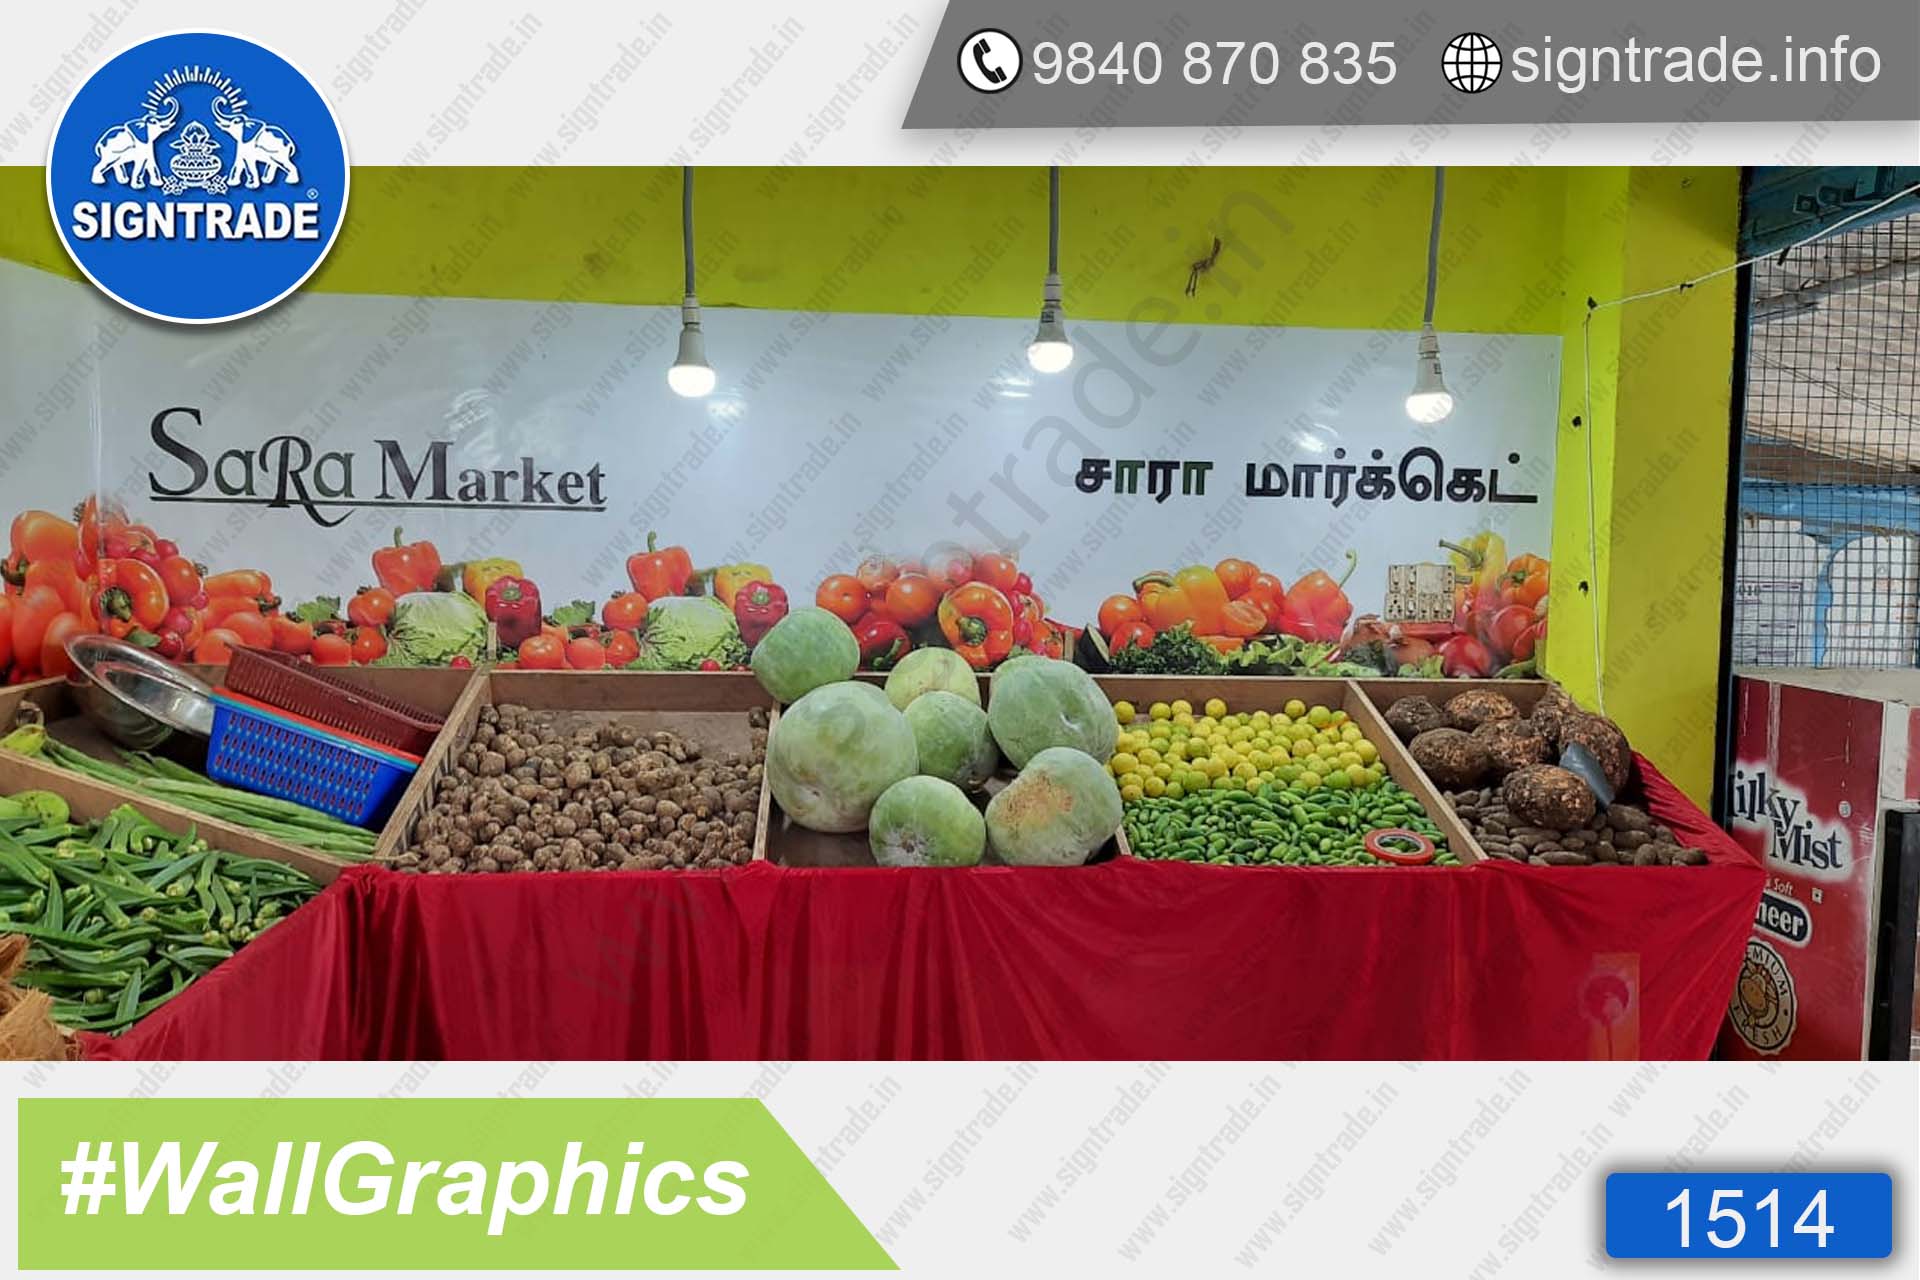 Sara Market, Madambakkam, Chennai - SIGNTRADE - Wall Graphics - Vinyl Graphics on Wall - Digital Printing Services in Chennai